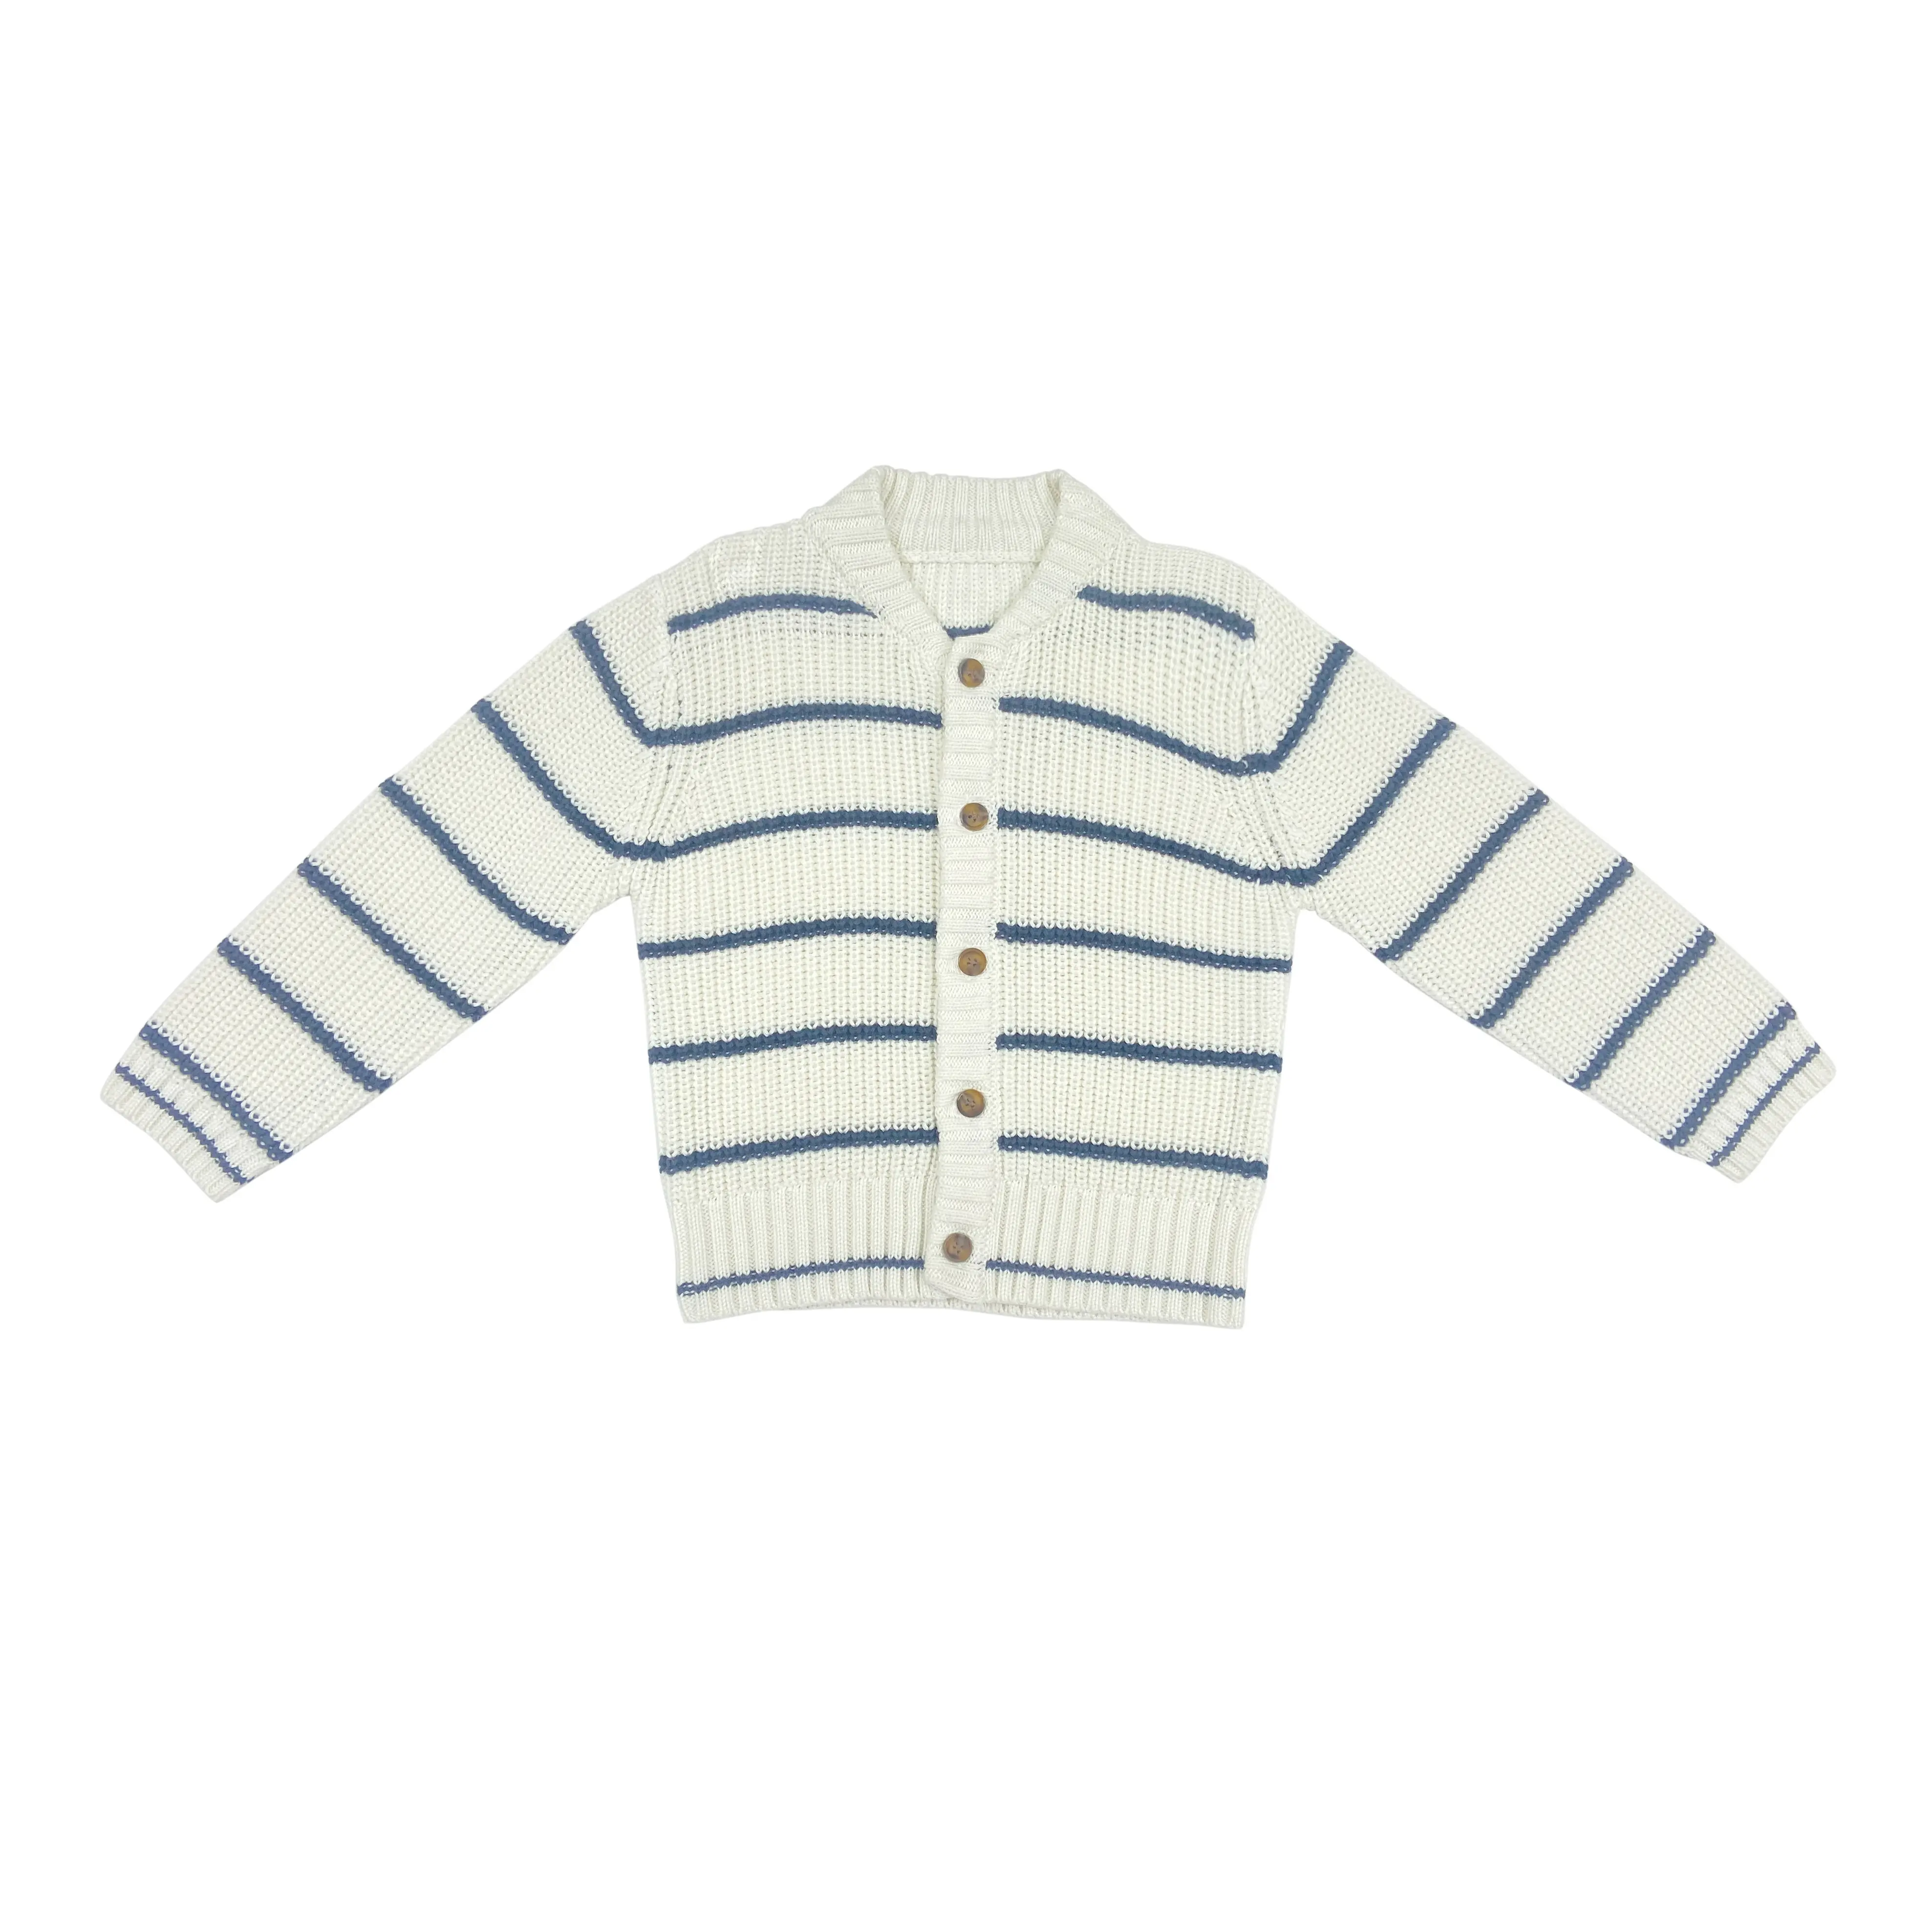 All'ingrosso inverno autunno personalizzato vestiti del bambino strisce maglione Cardigan Knnit per bambina ragazzo